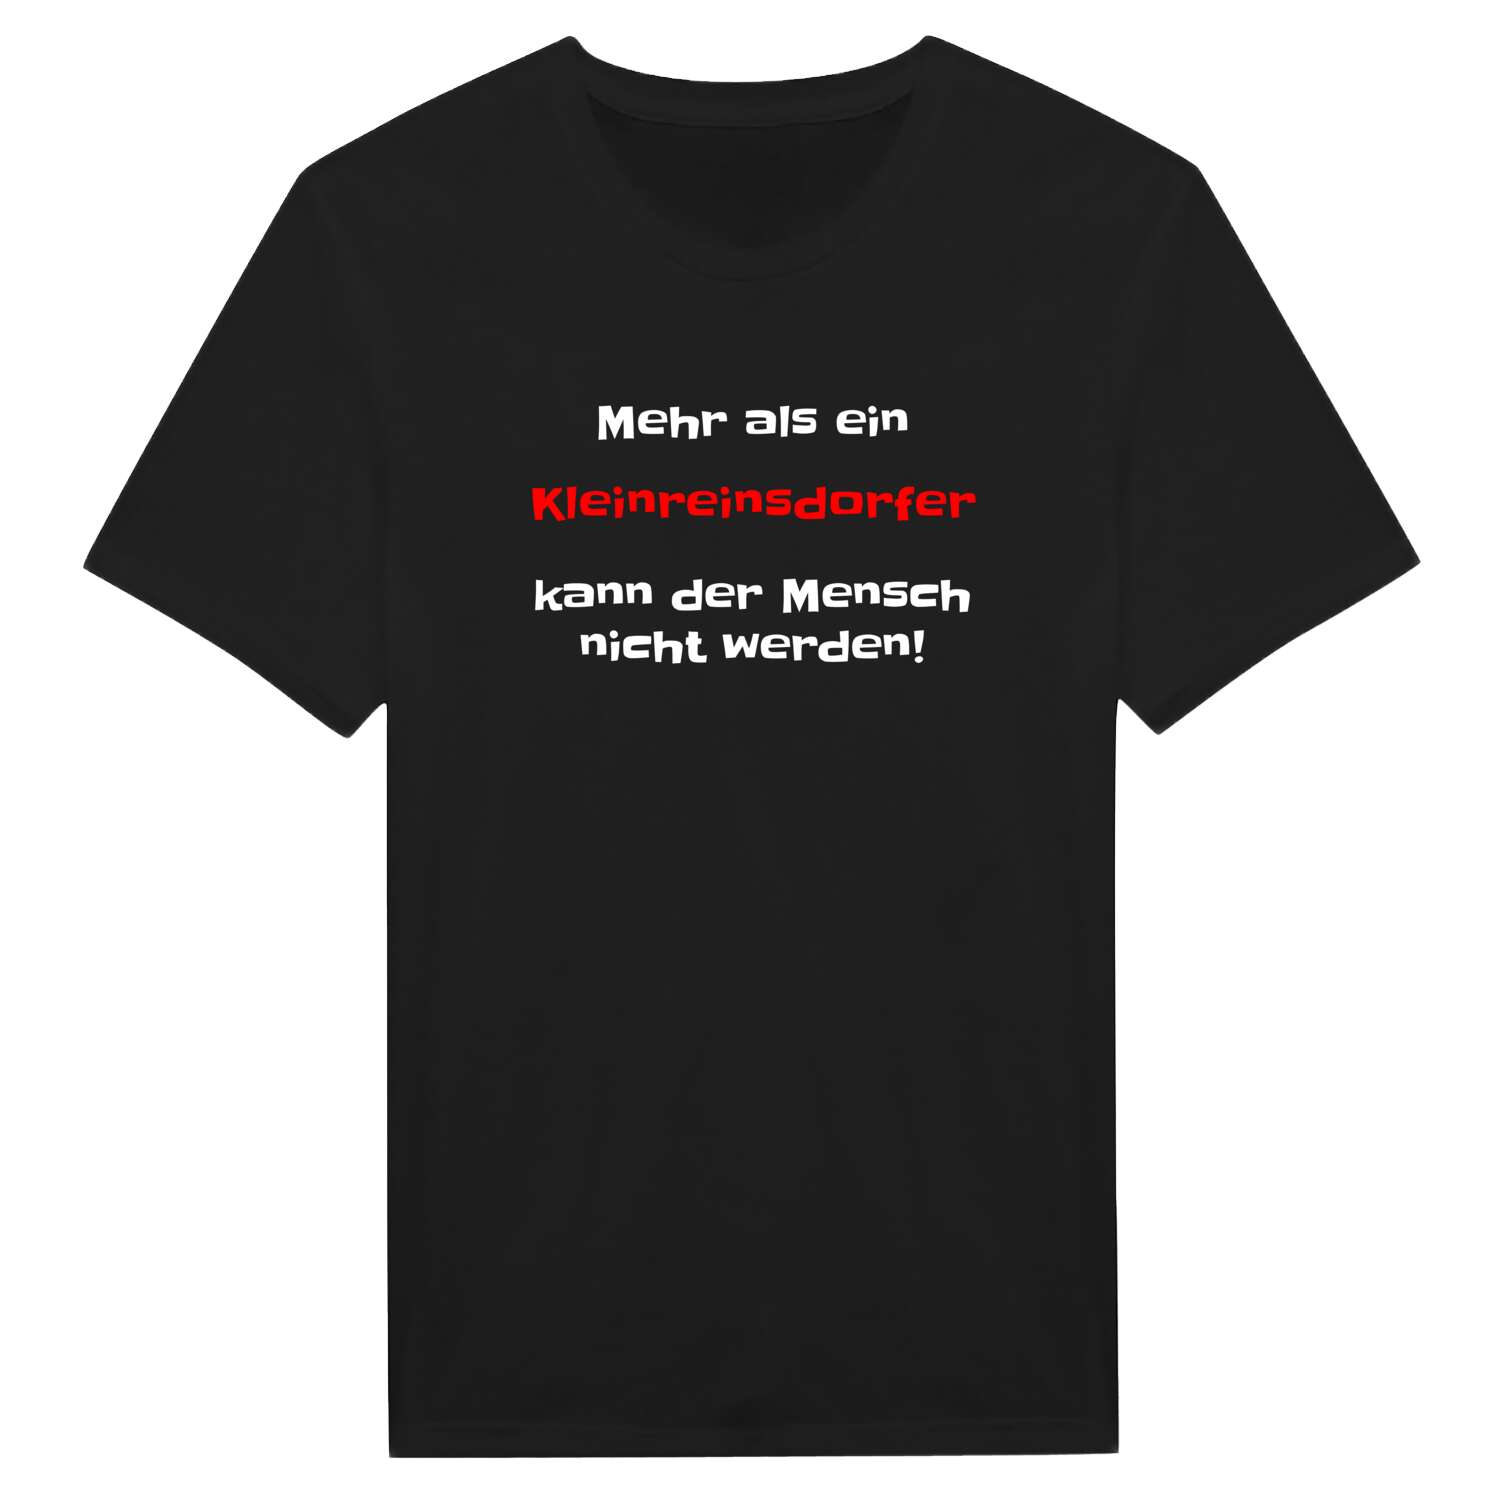 Kleinreinsdorf T-Shirt »Mehr als ein«